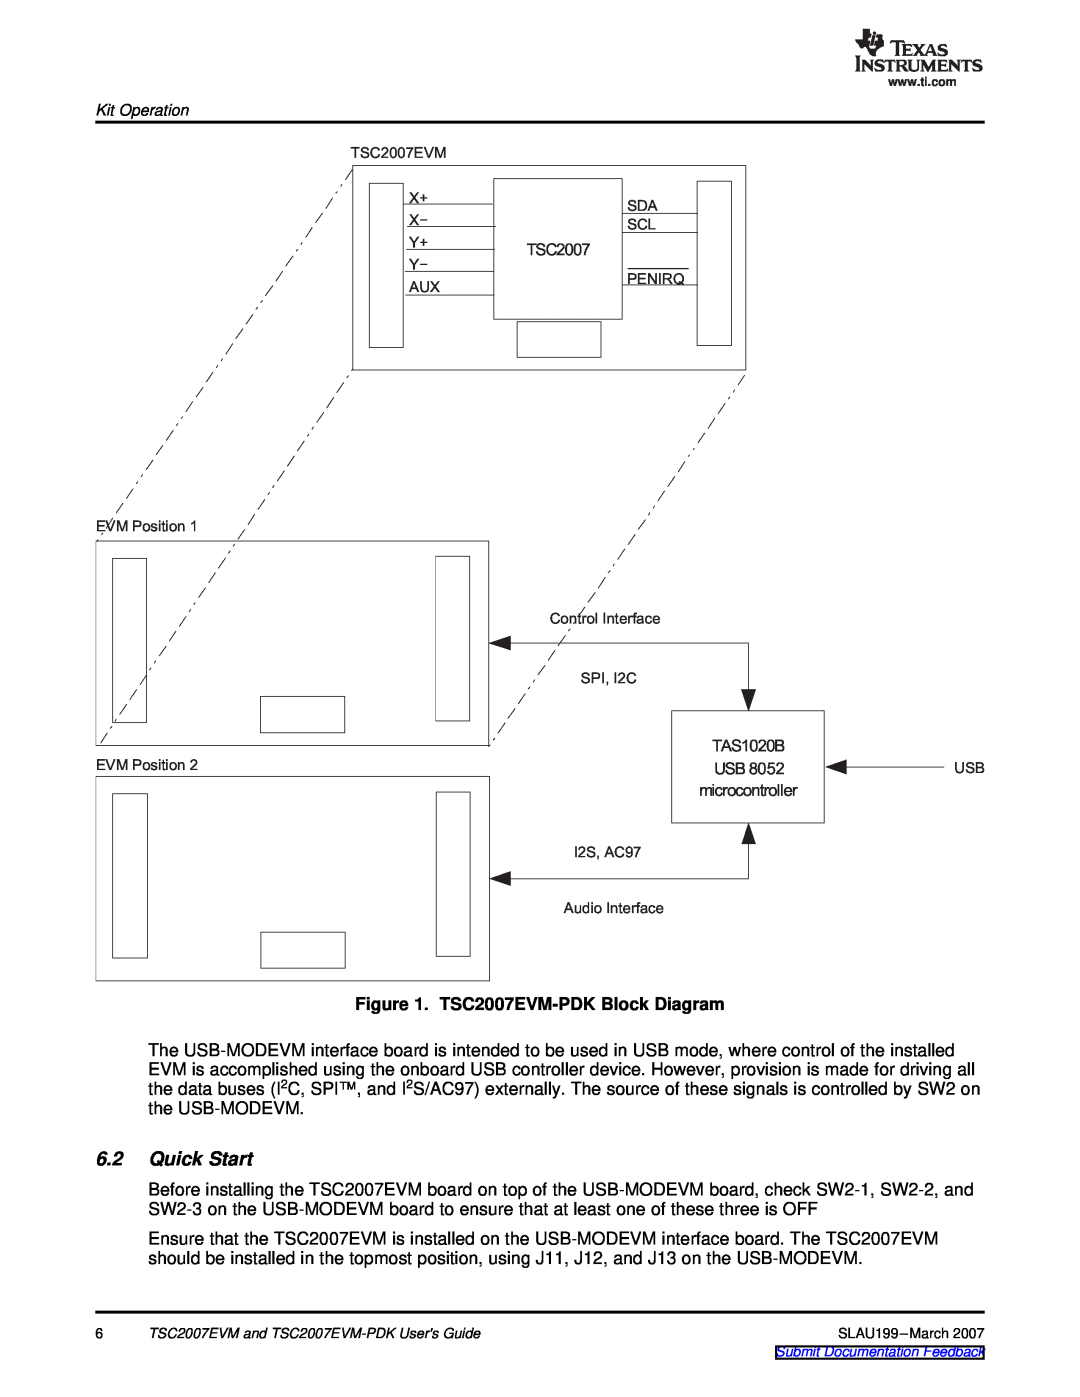 Texas Instruments manual Quick Start, TSC2007EVM-PDK Block Diagram 